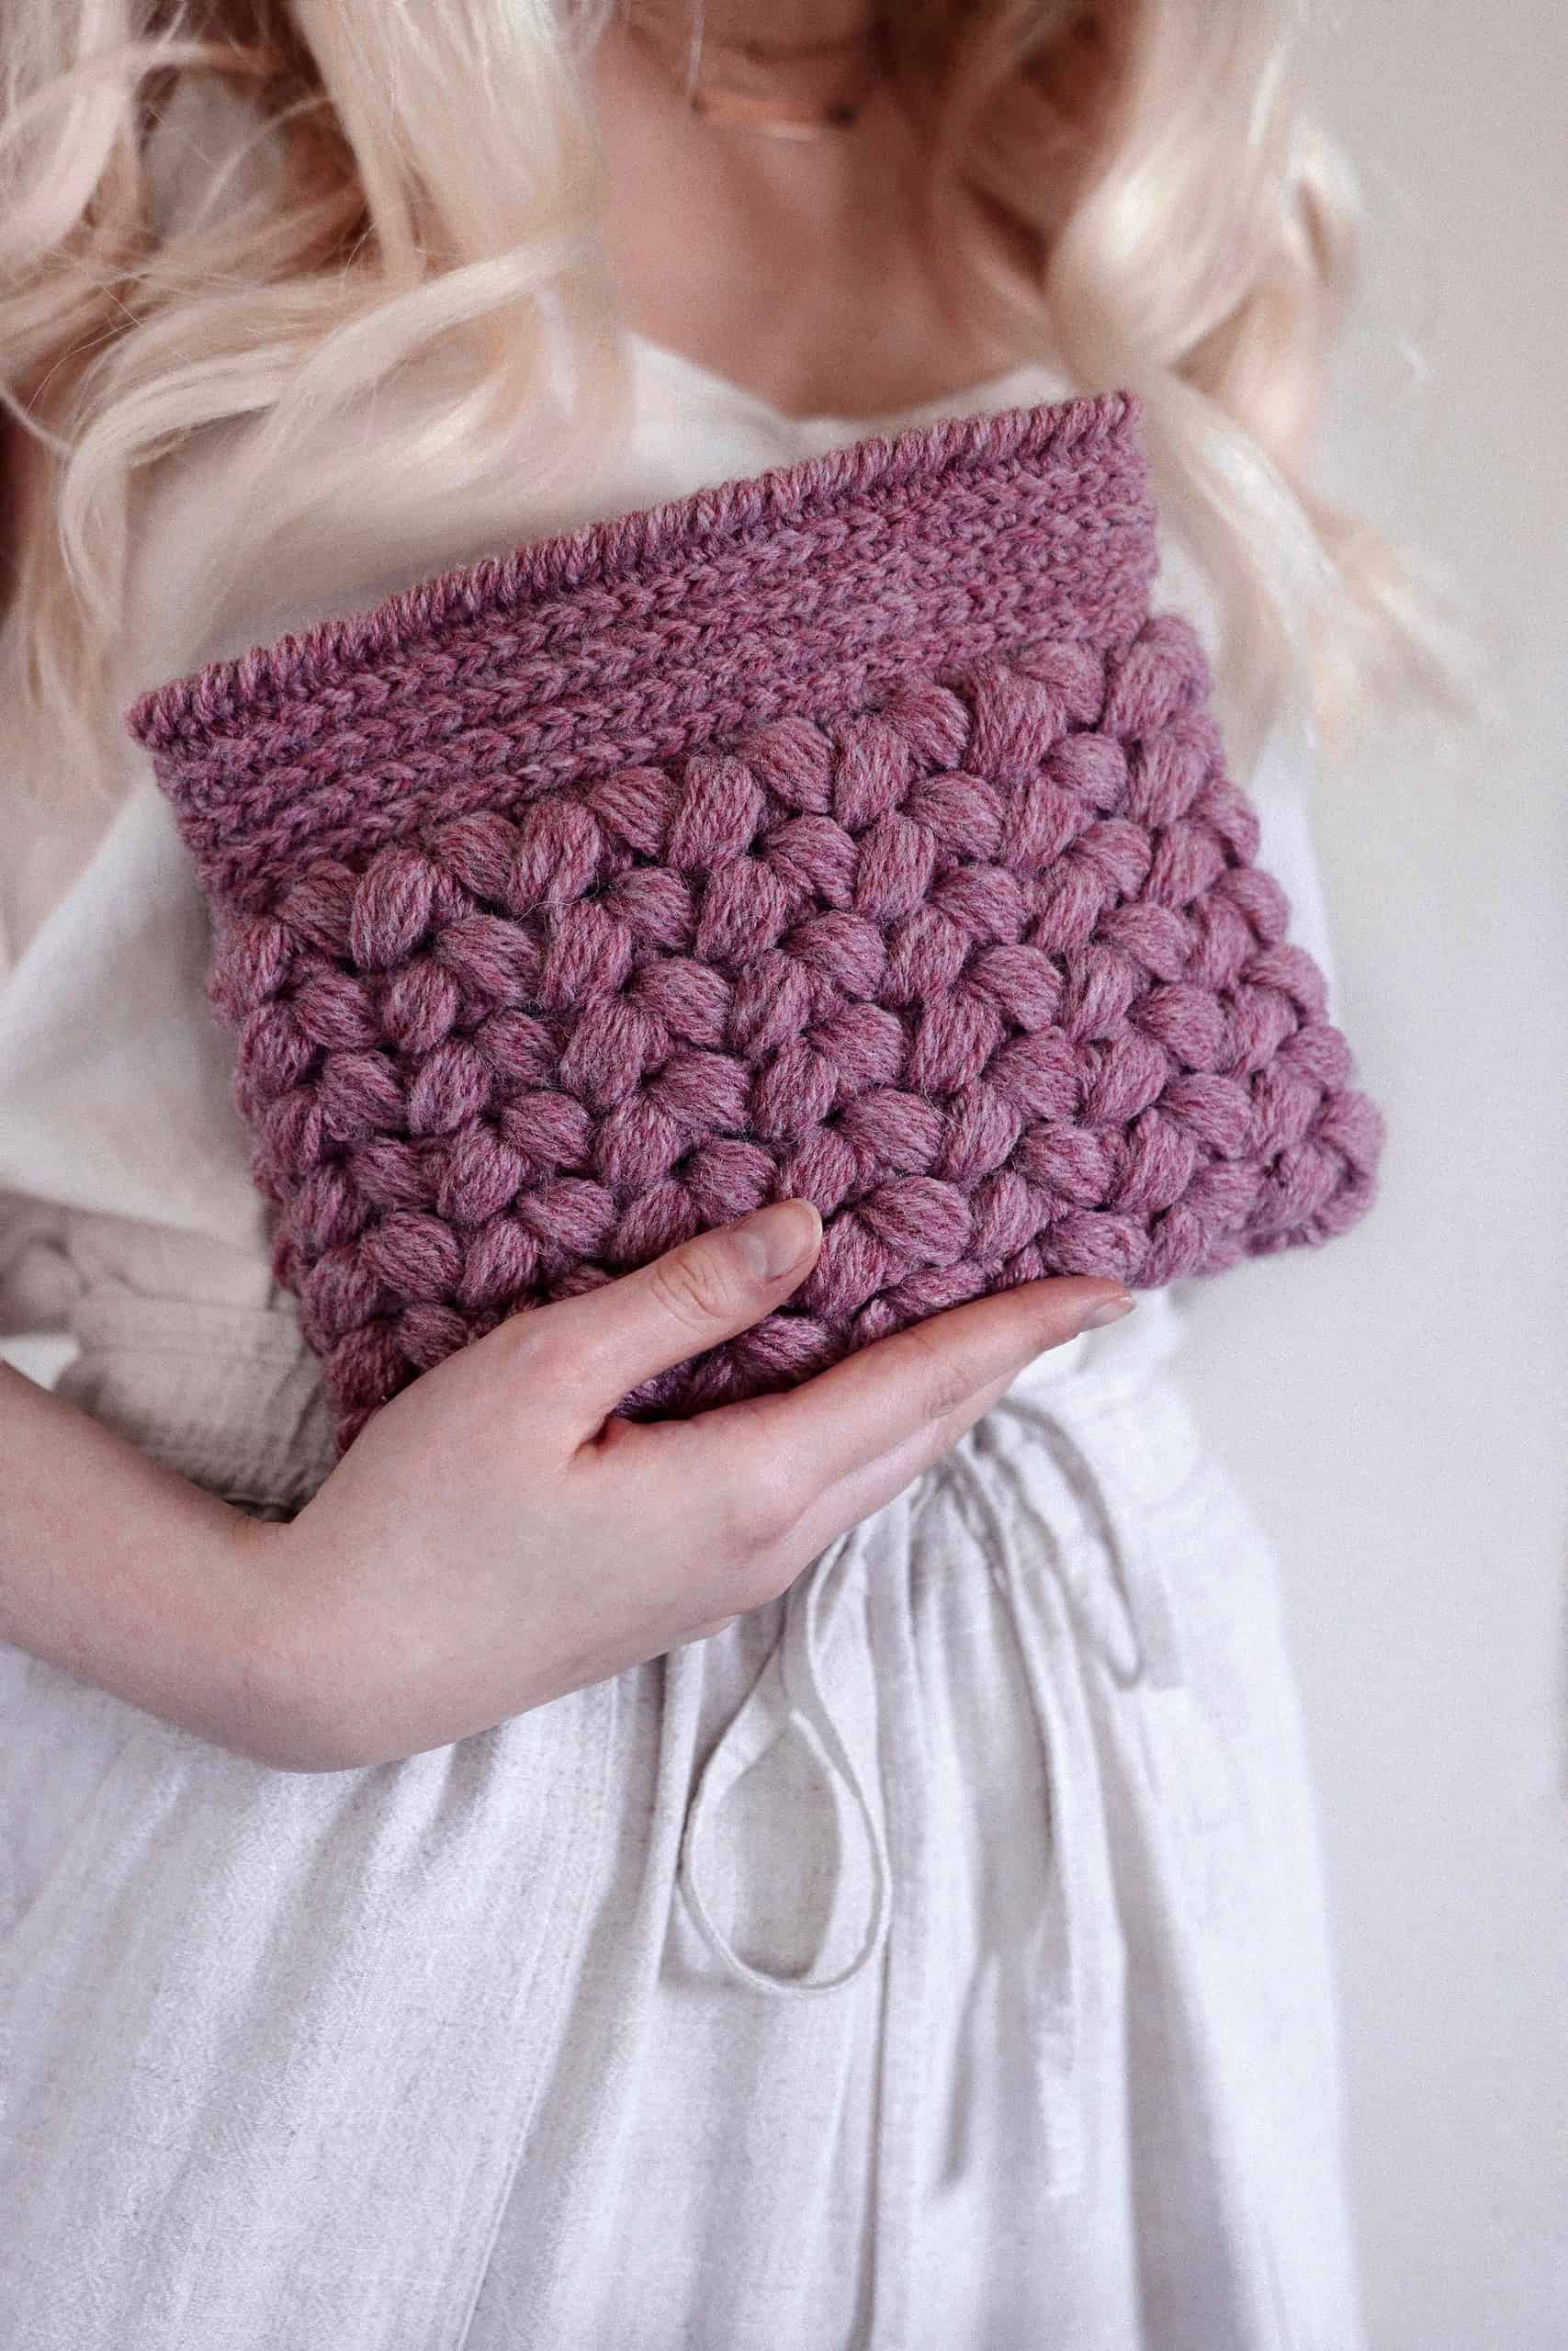 30 Cute Crochet Purses For Kids | Crochet projects, Crochet handbags  patterns, Crochet purse patterns